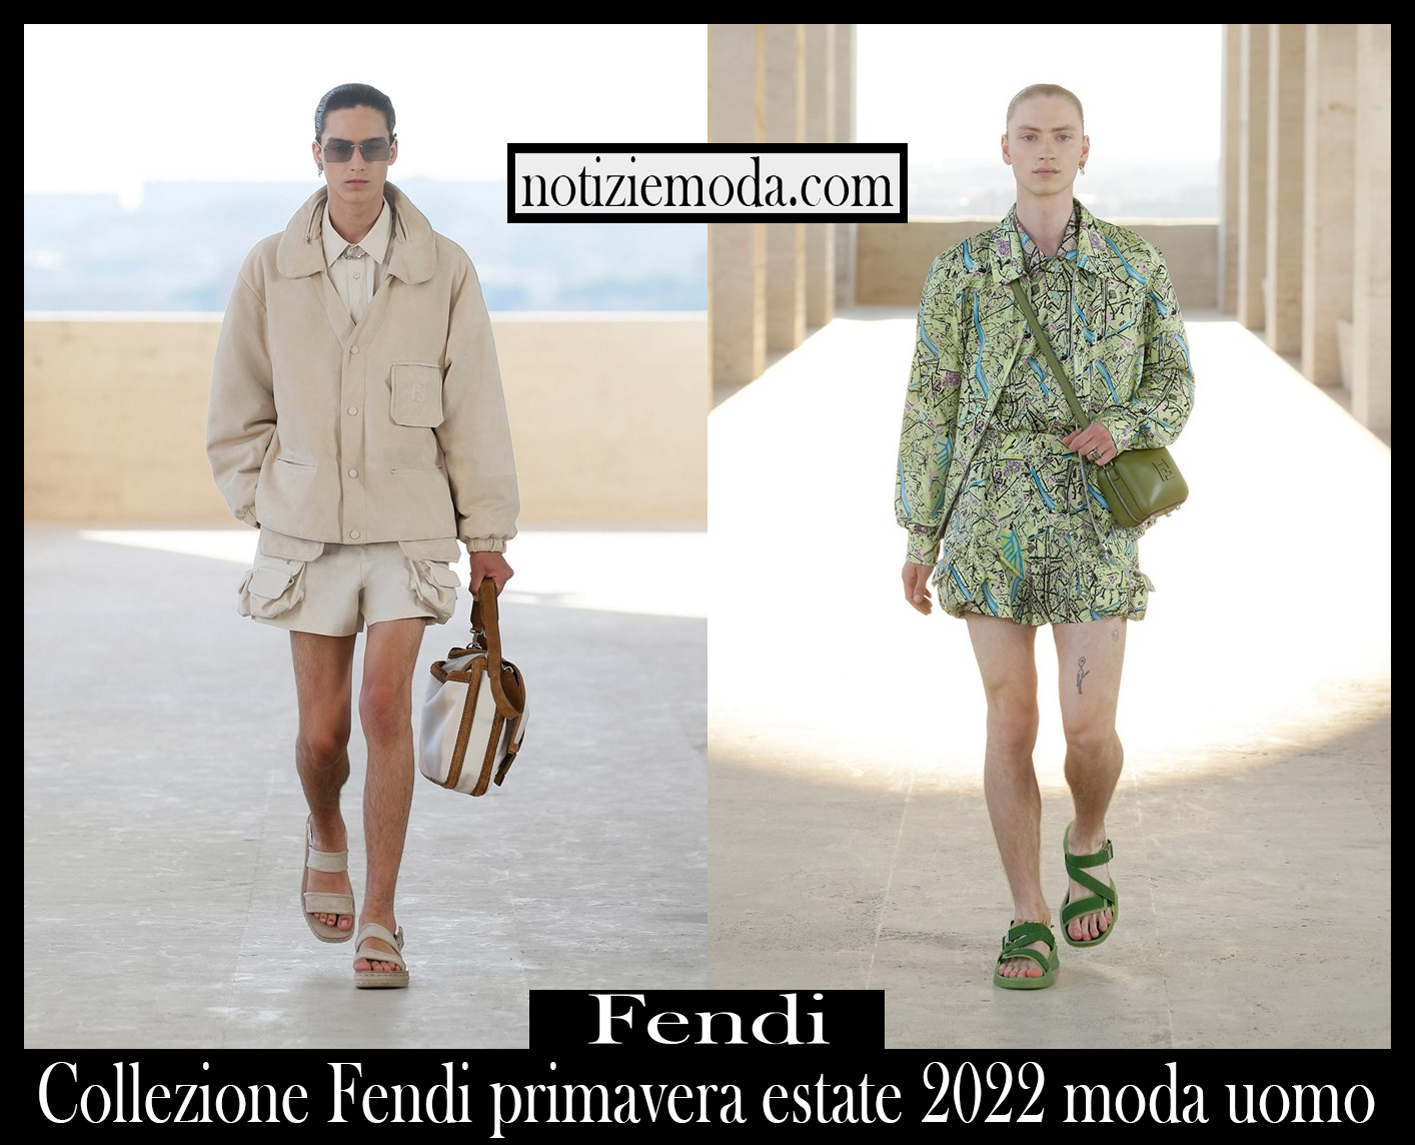 Collezione Fendi primavera estate 2022 moda uomo